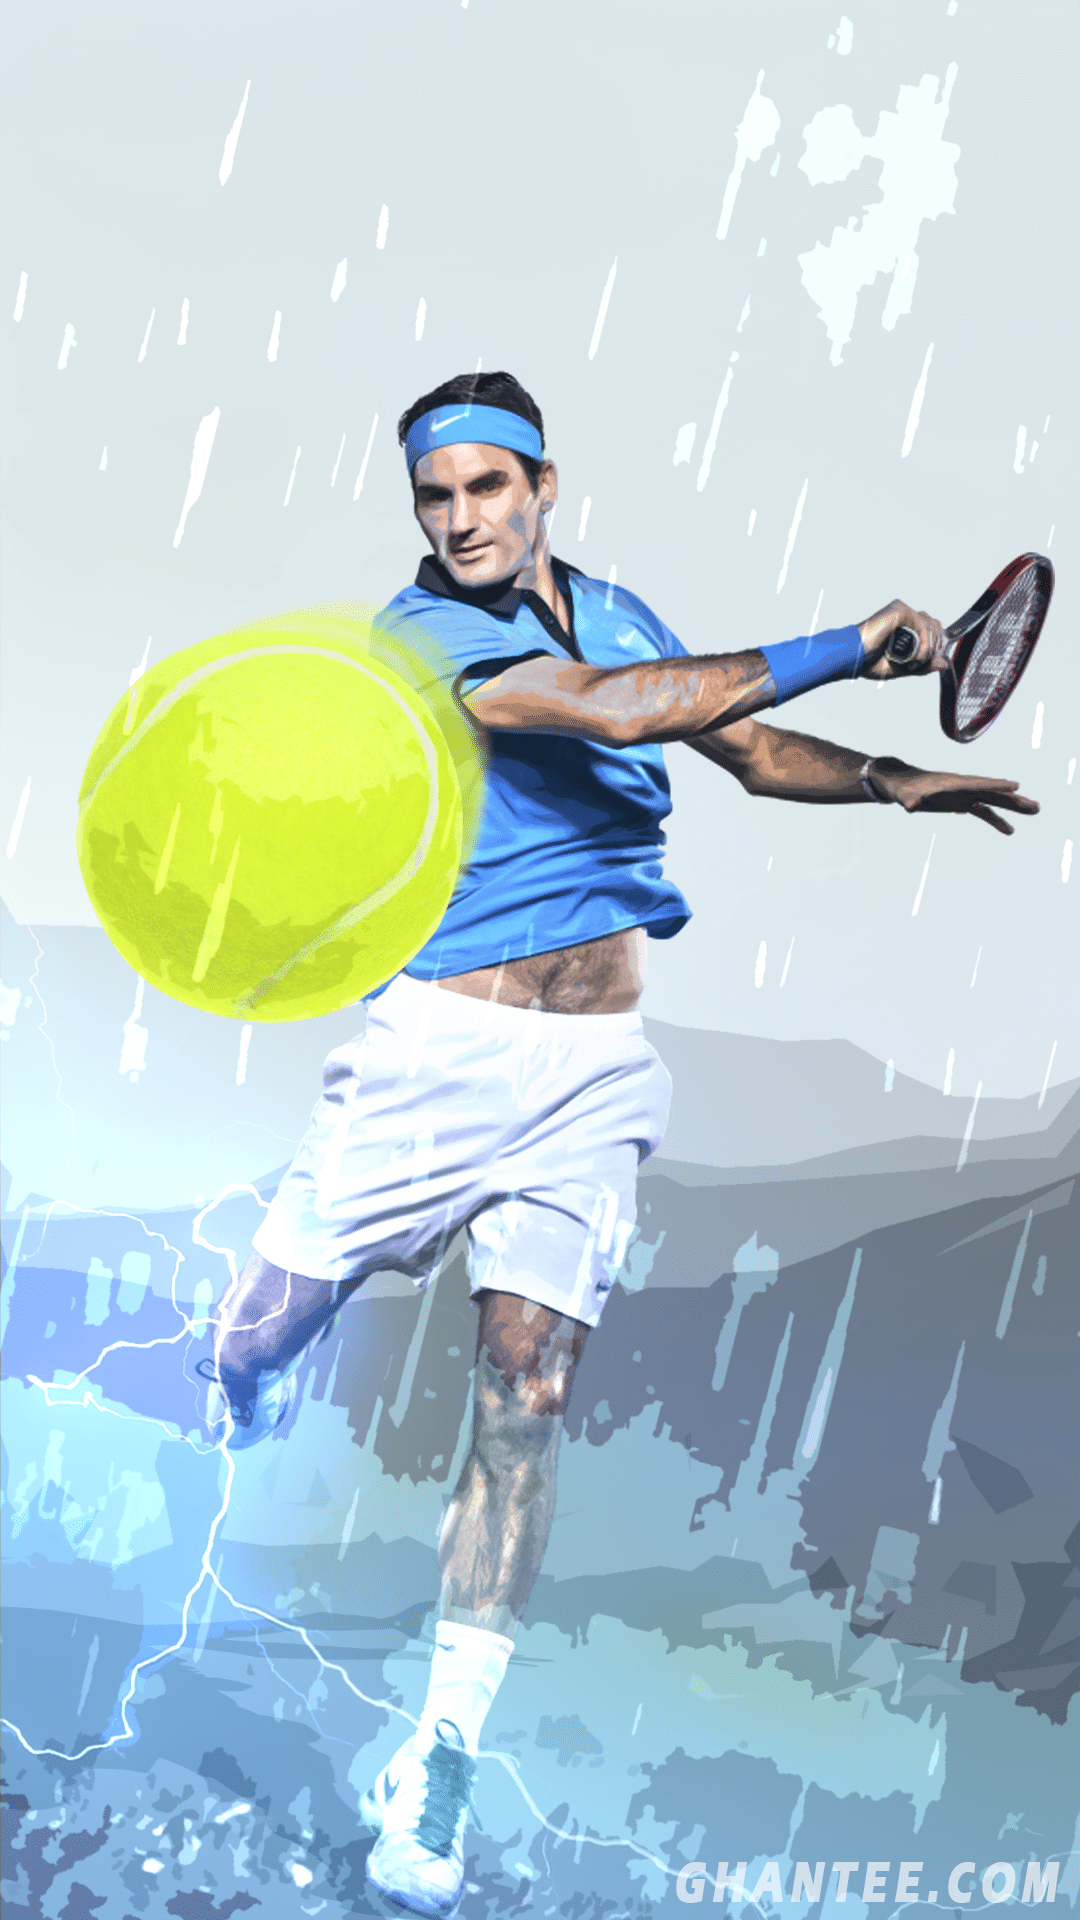 Roger Federer Wallpaper- Top Best Quality Roger Federer Background (HD, 4k)